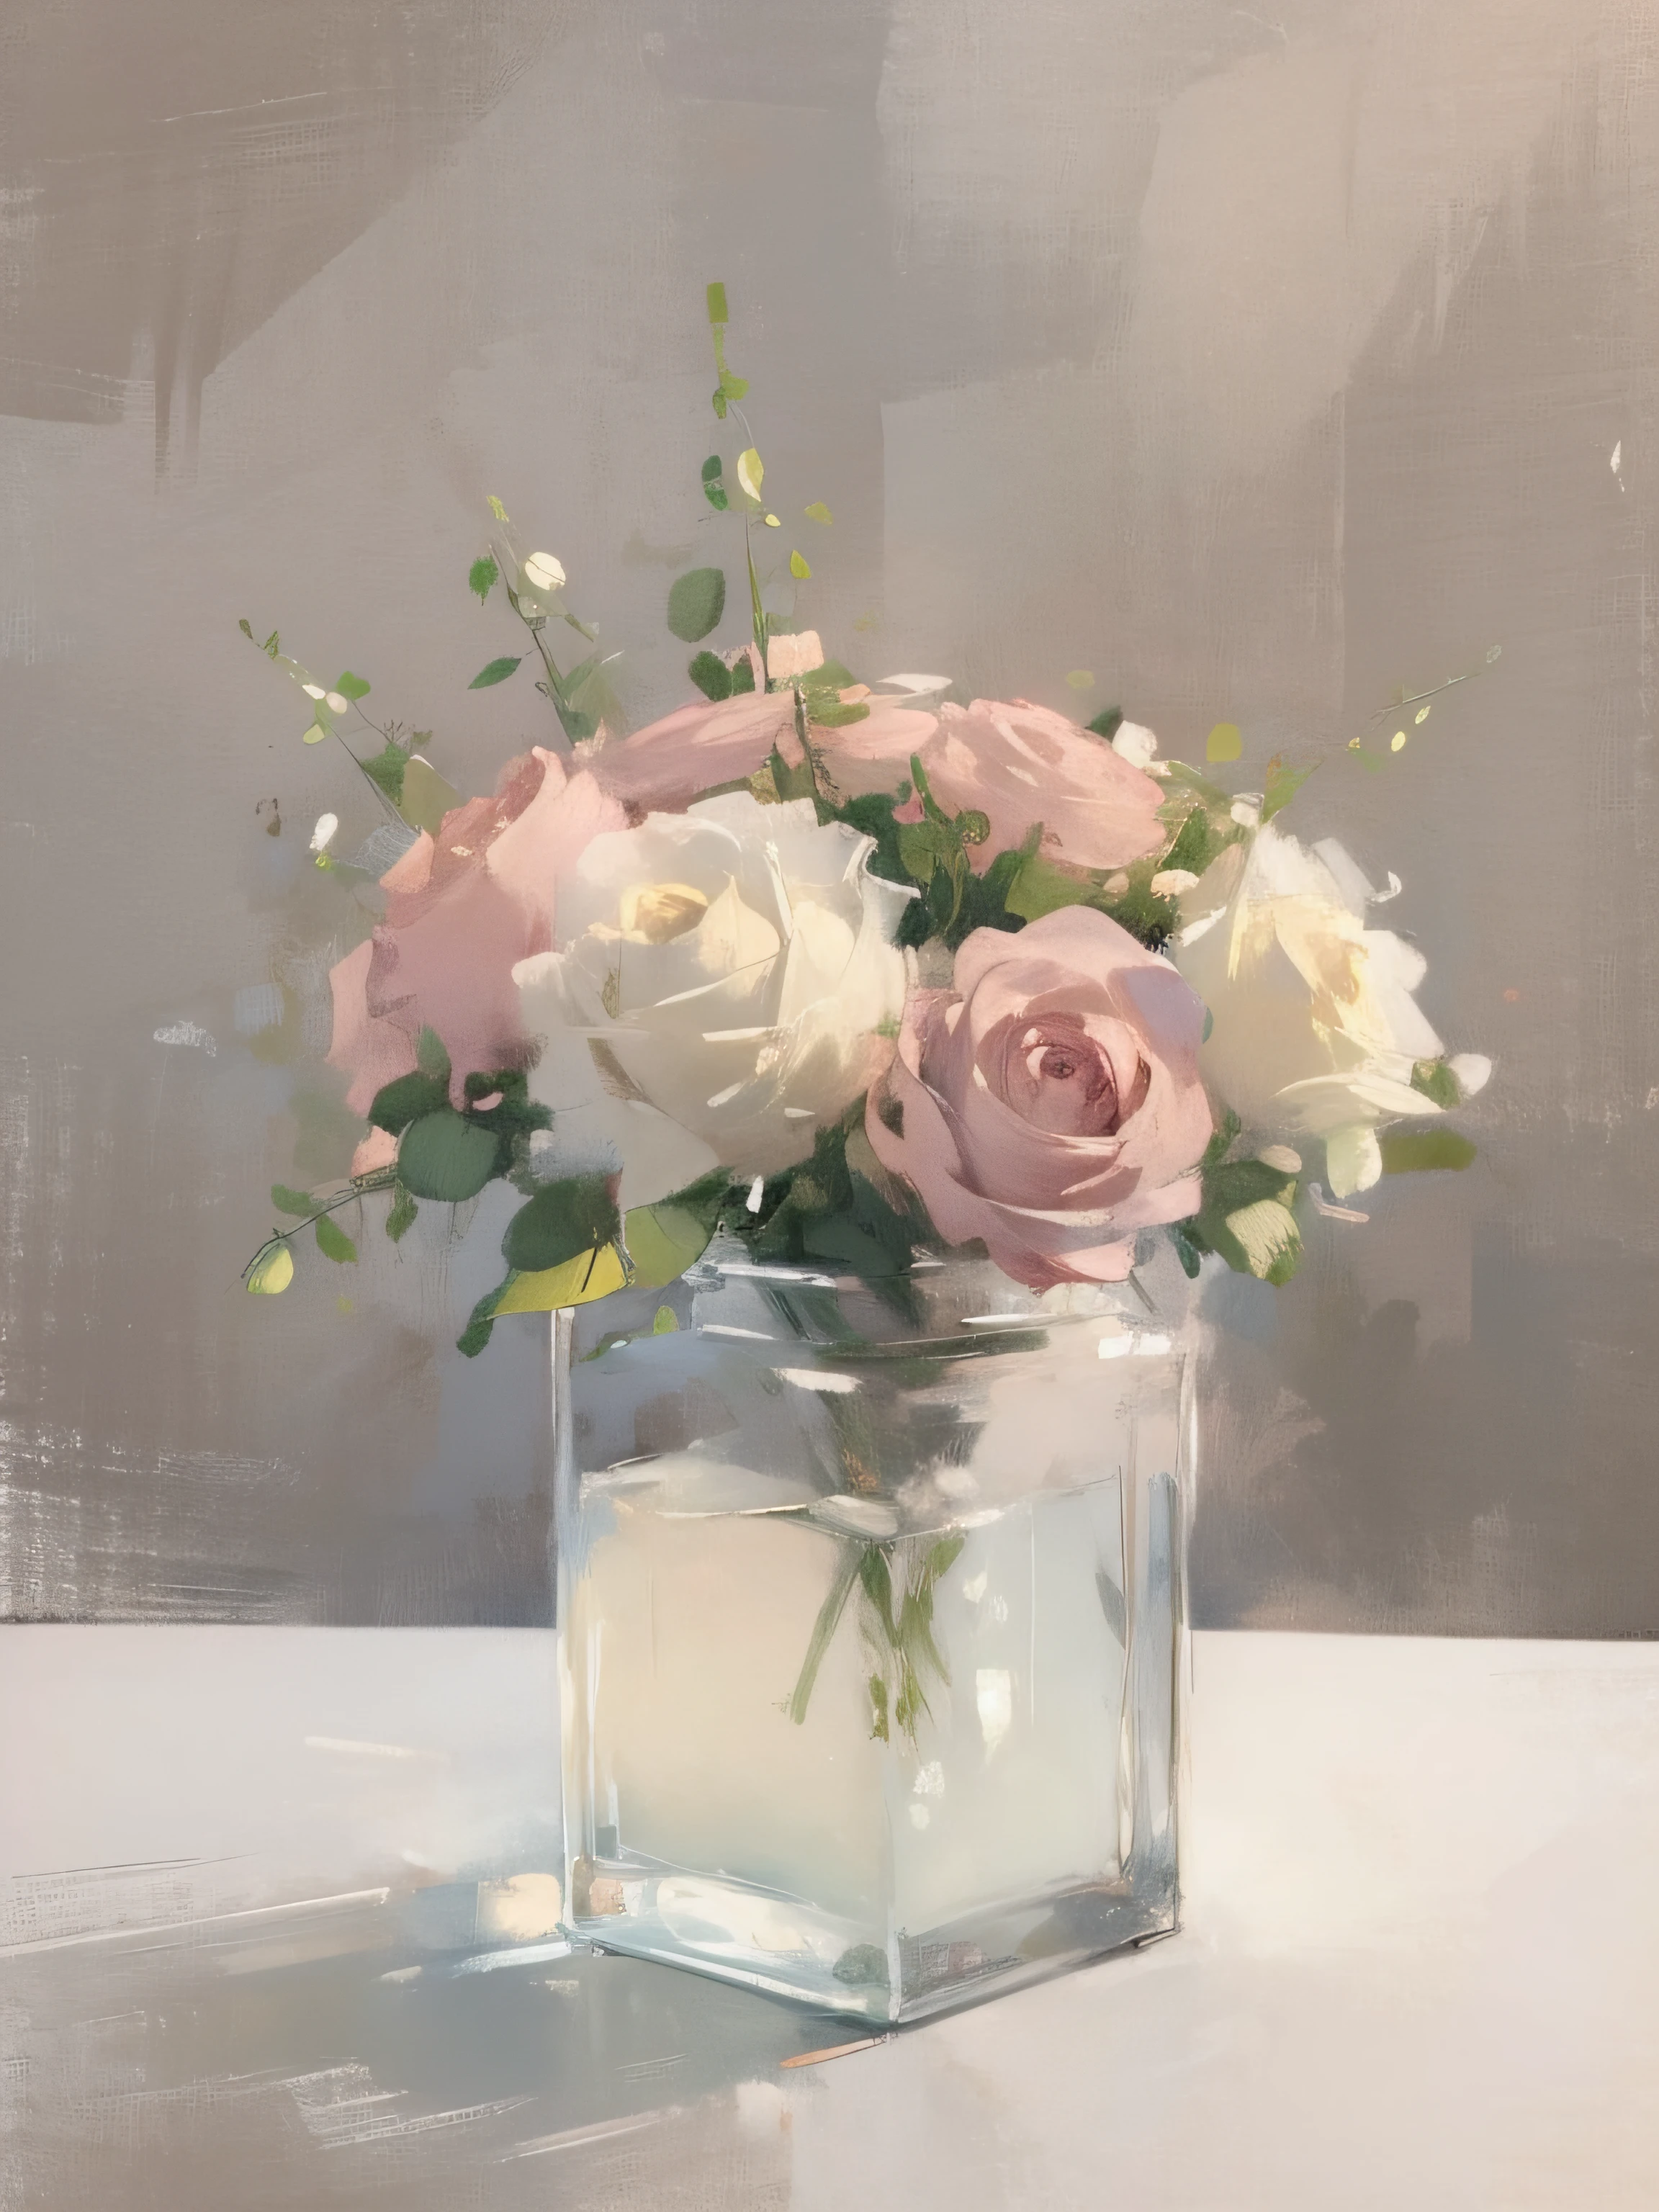 ビンテージ落ち着いた静物画, ピンクと白の花の植物